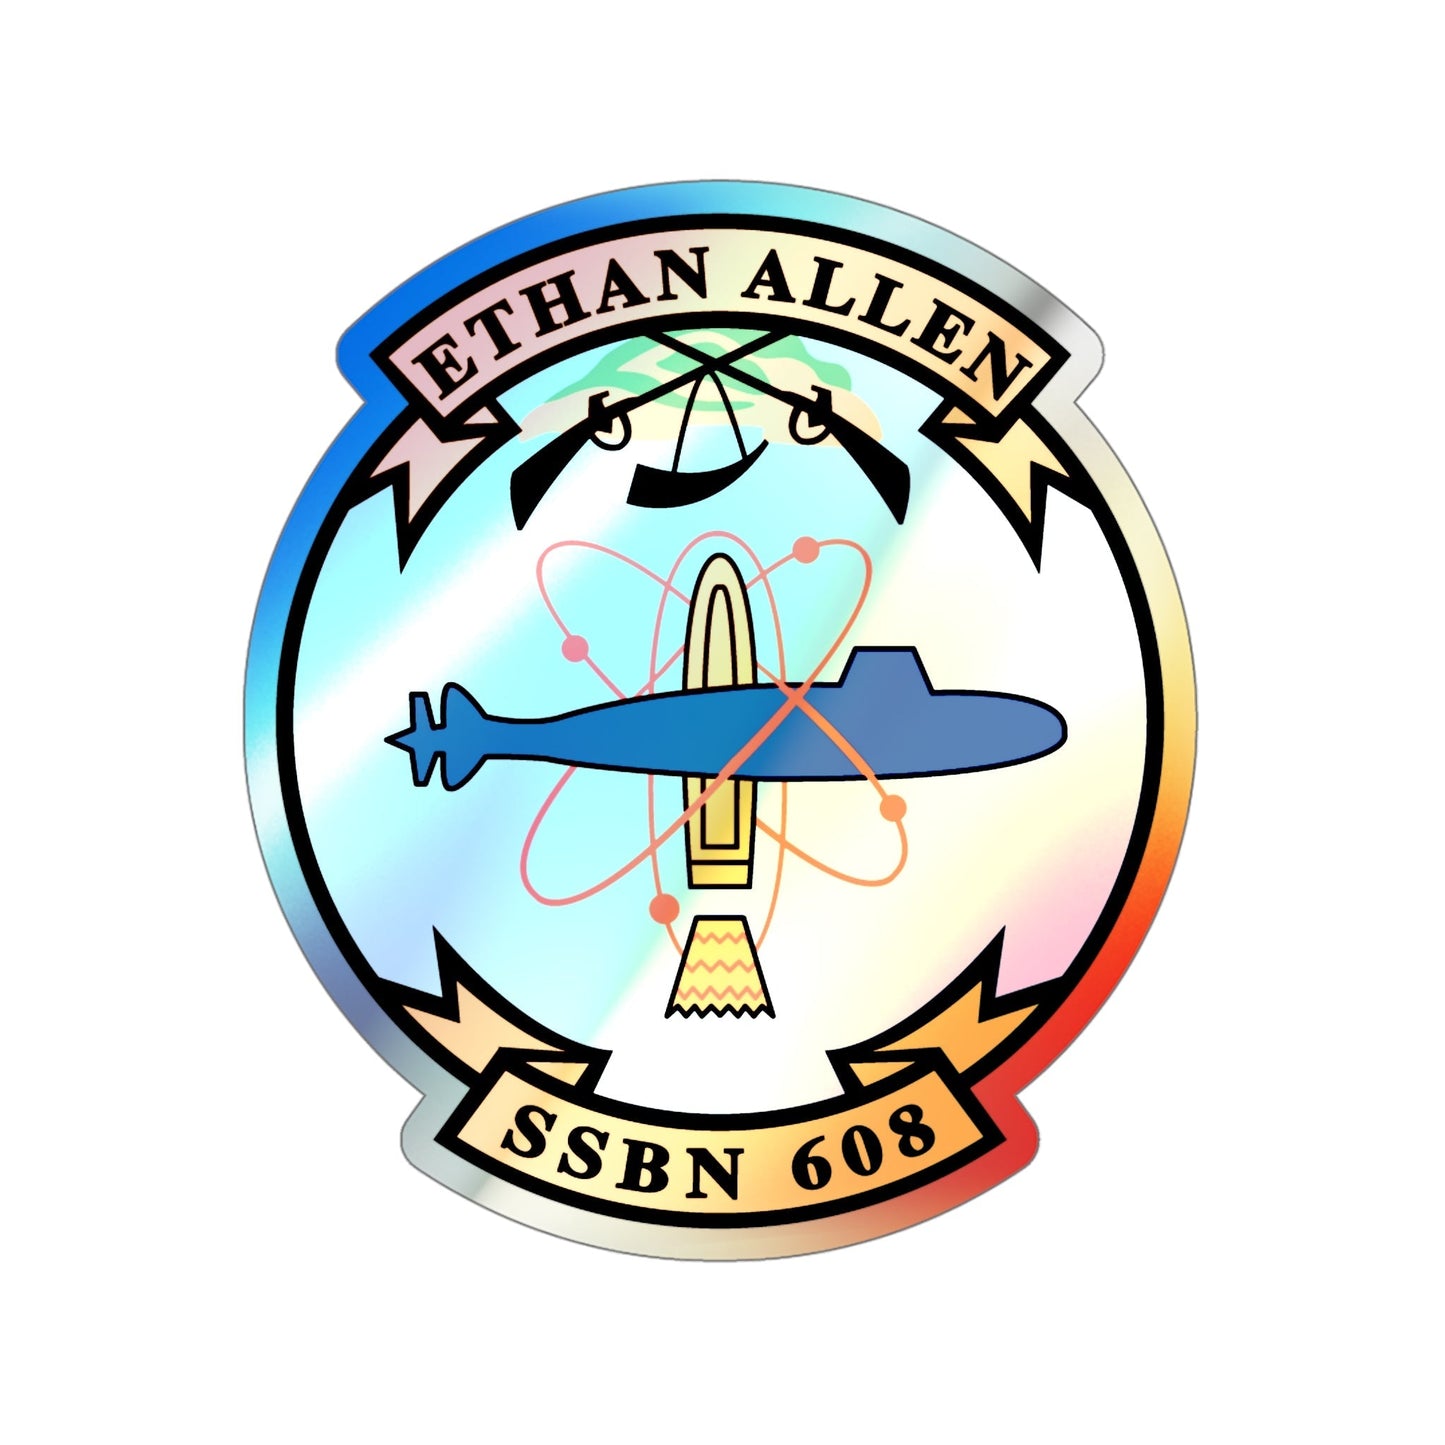 Ethan Allen SSBN 608 (U.S. Navy) Holographic STICKER Die-Cut Vinyl Decal-5 Inch-The Sticker Space